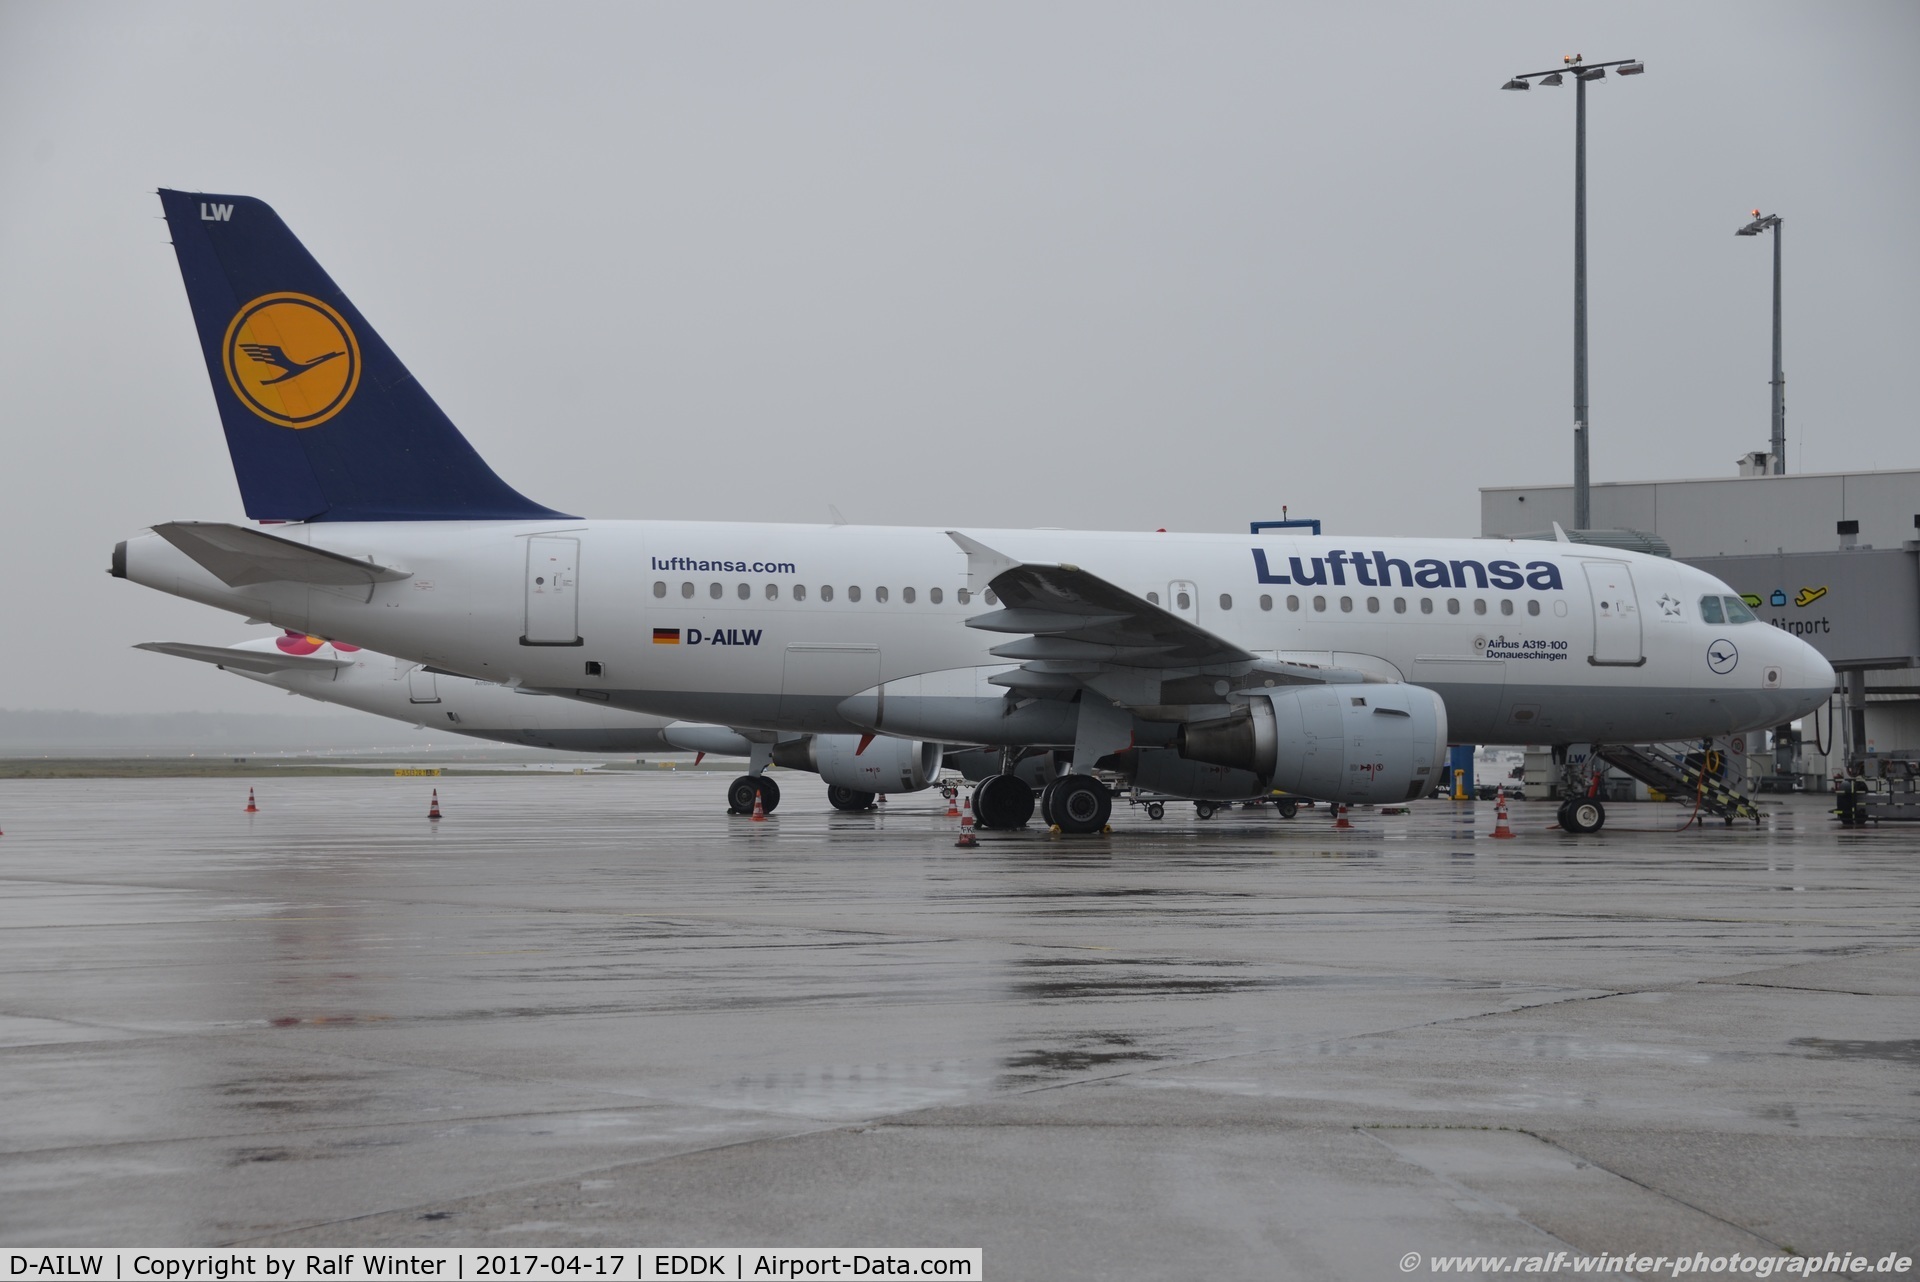 D-AILW, 1998 Airbus A319-114 C/N 853, Airbus A319-114 - LH DLH Lufthansa 'Donaueschingen' - 853 - D-AILW - 17.04.2017 - CGN